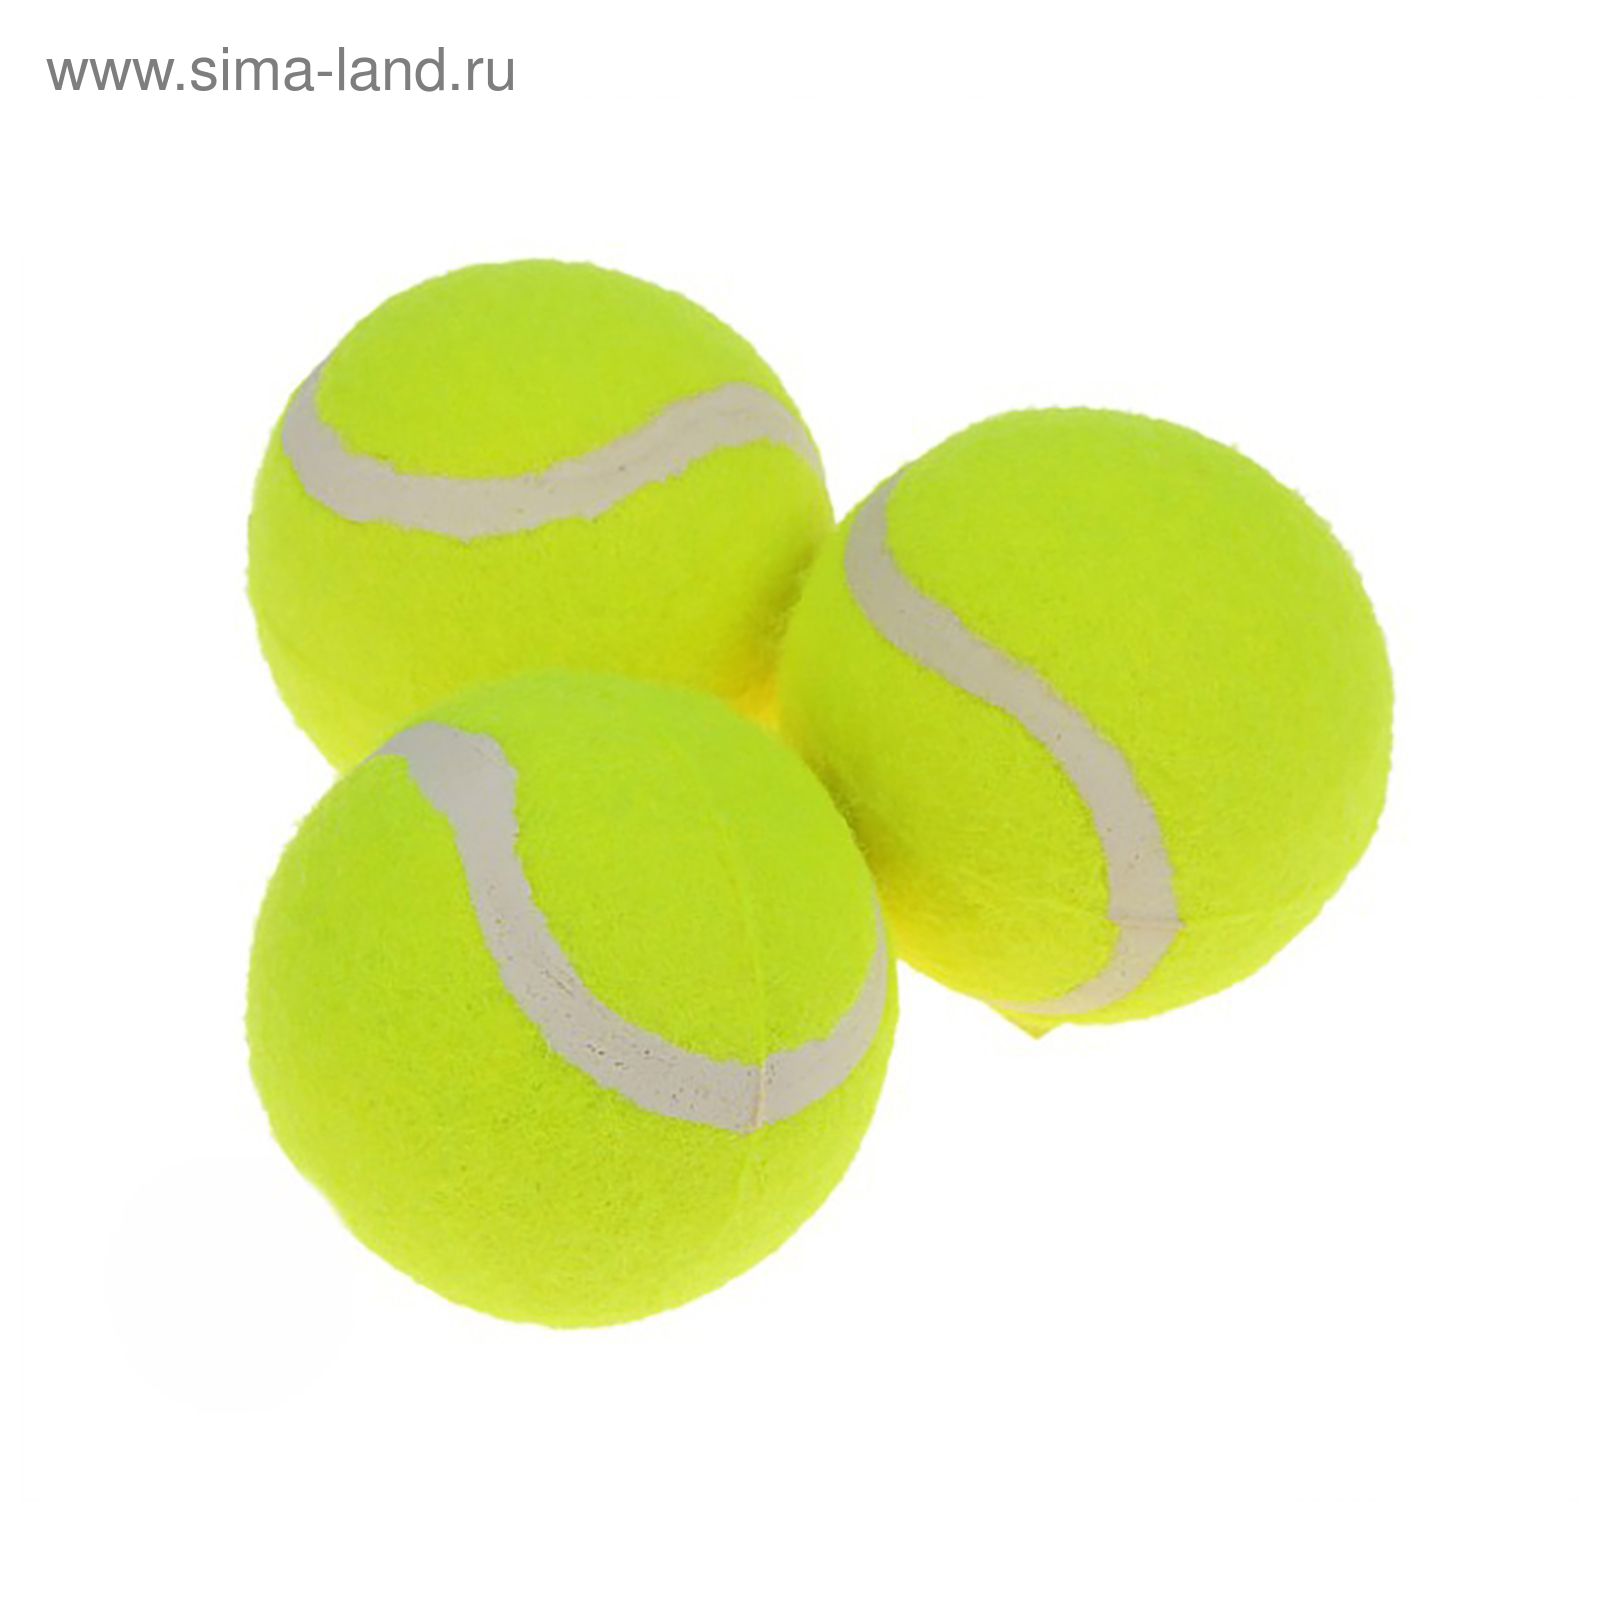 Мяч теннисный Werkon в тубе, набор 3 шт.